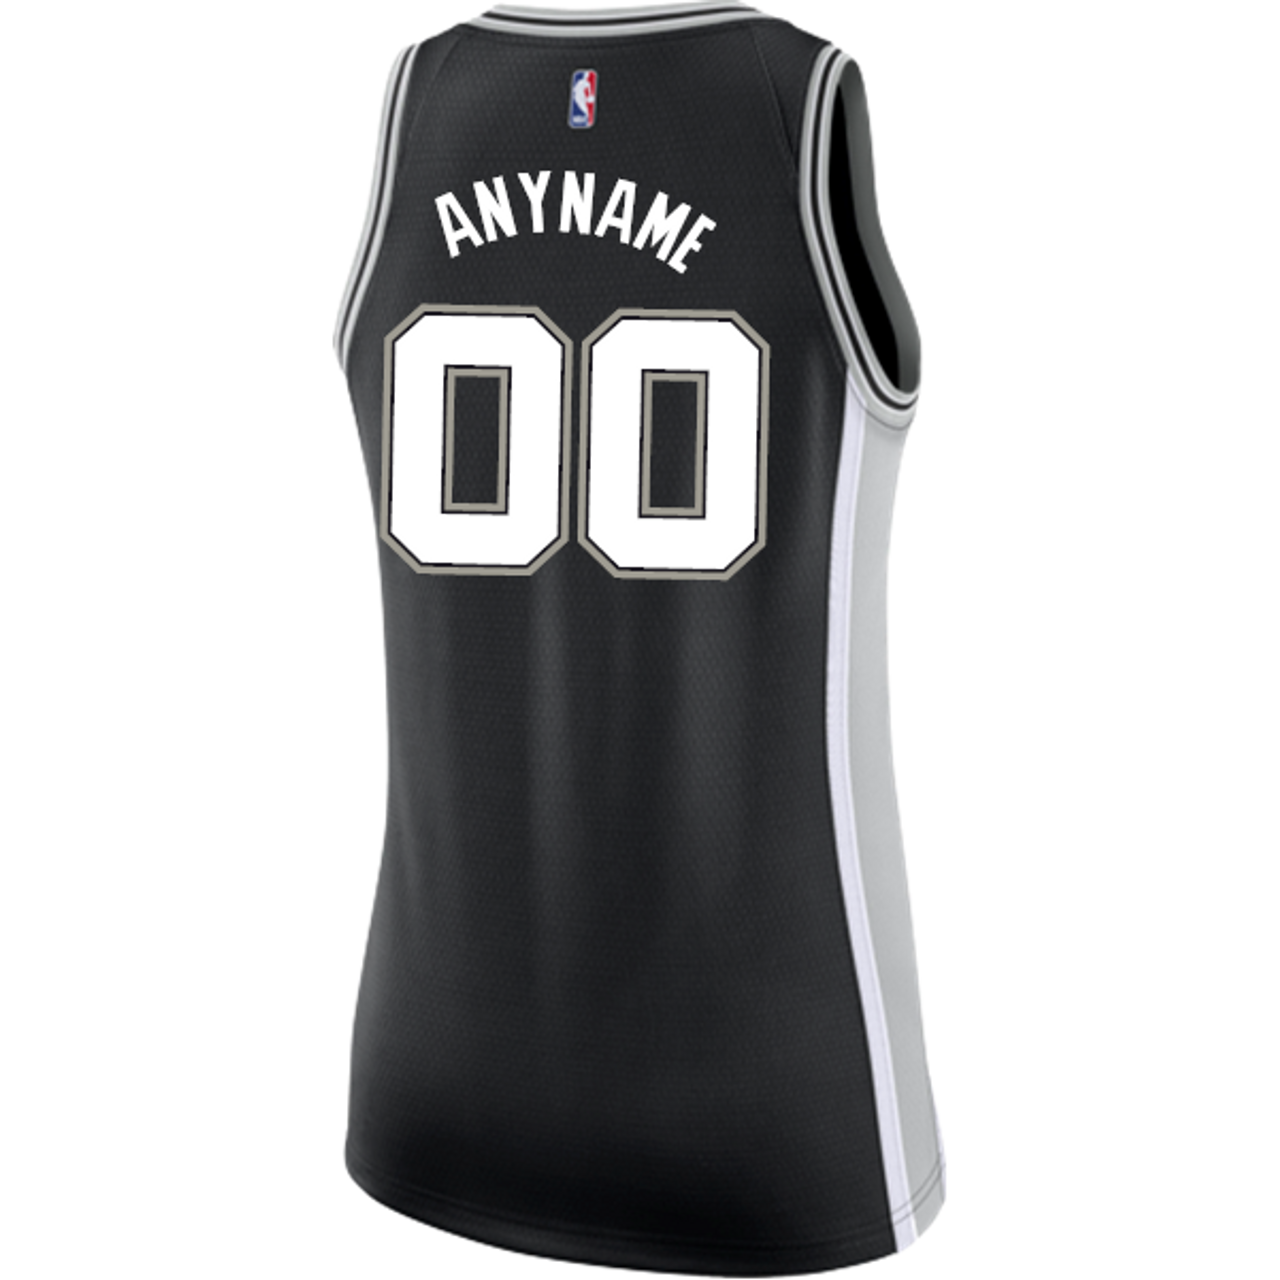 San Antonio Spurs Women S Nike Custom Personalized Icon Swingman Jersey The Official Spurs Fan Shop